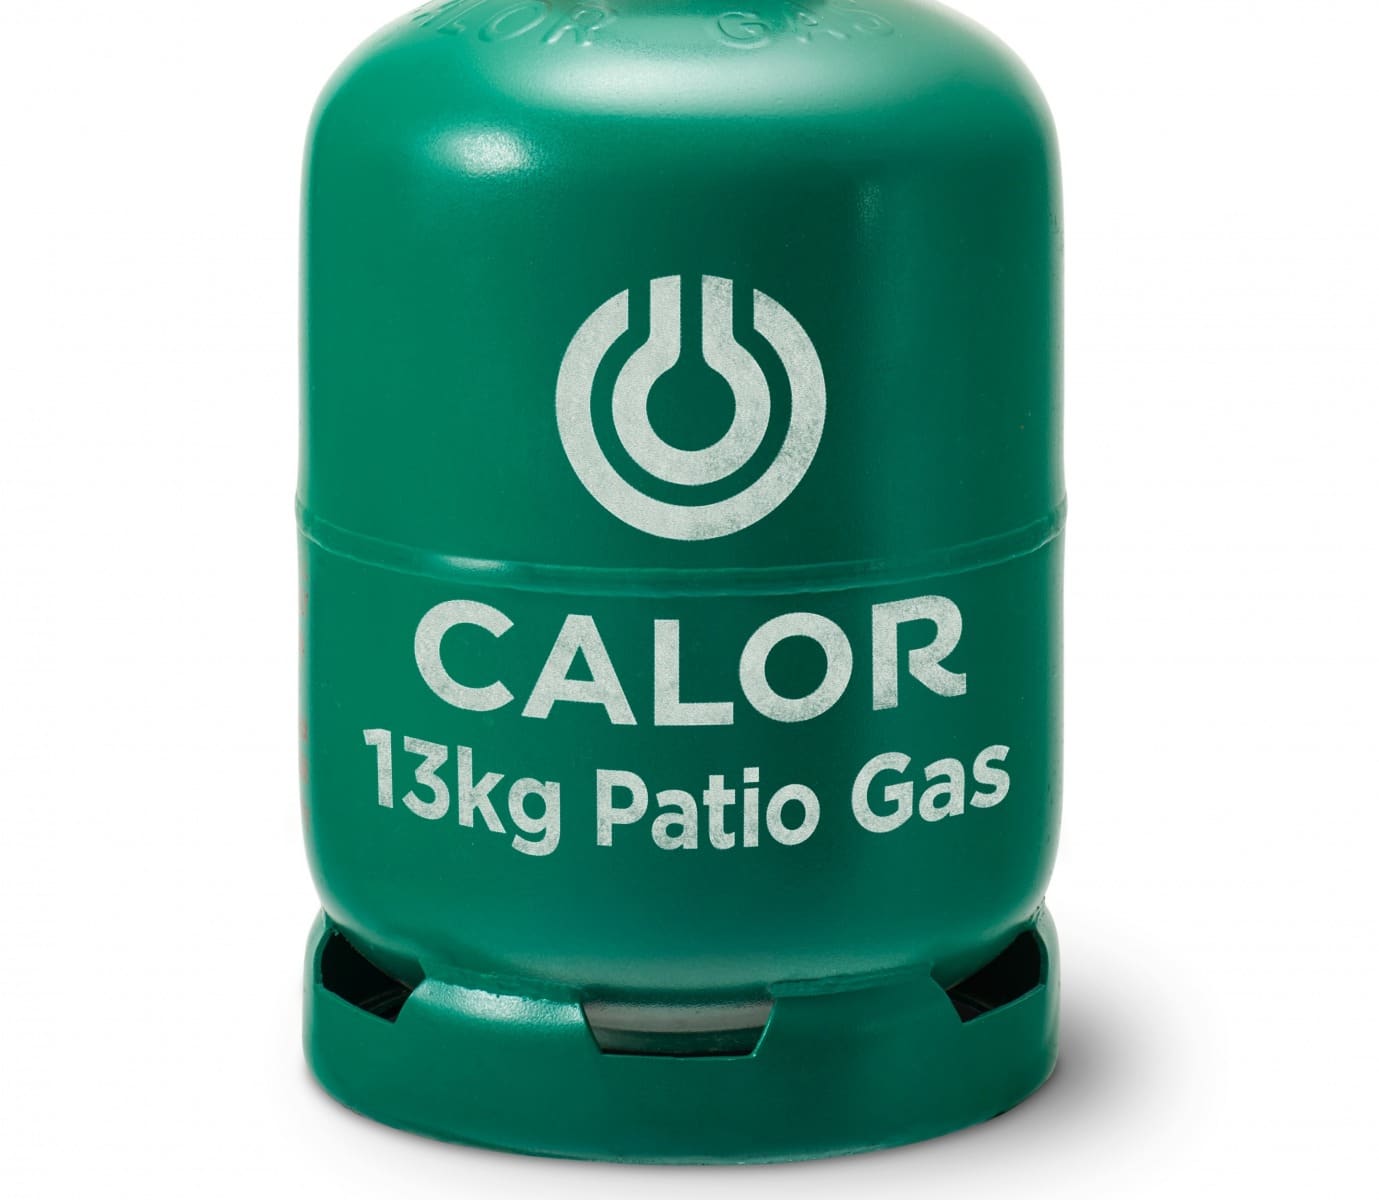 13KG-Patio-Gas-Calor